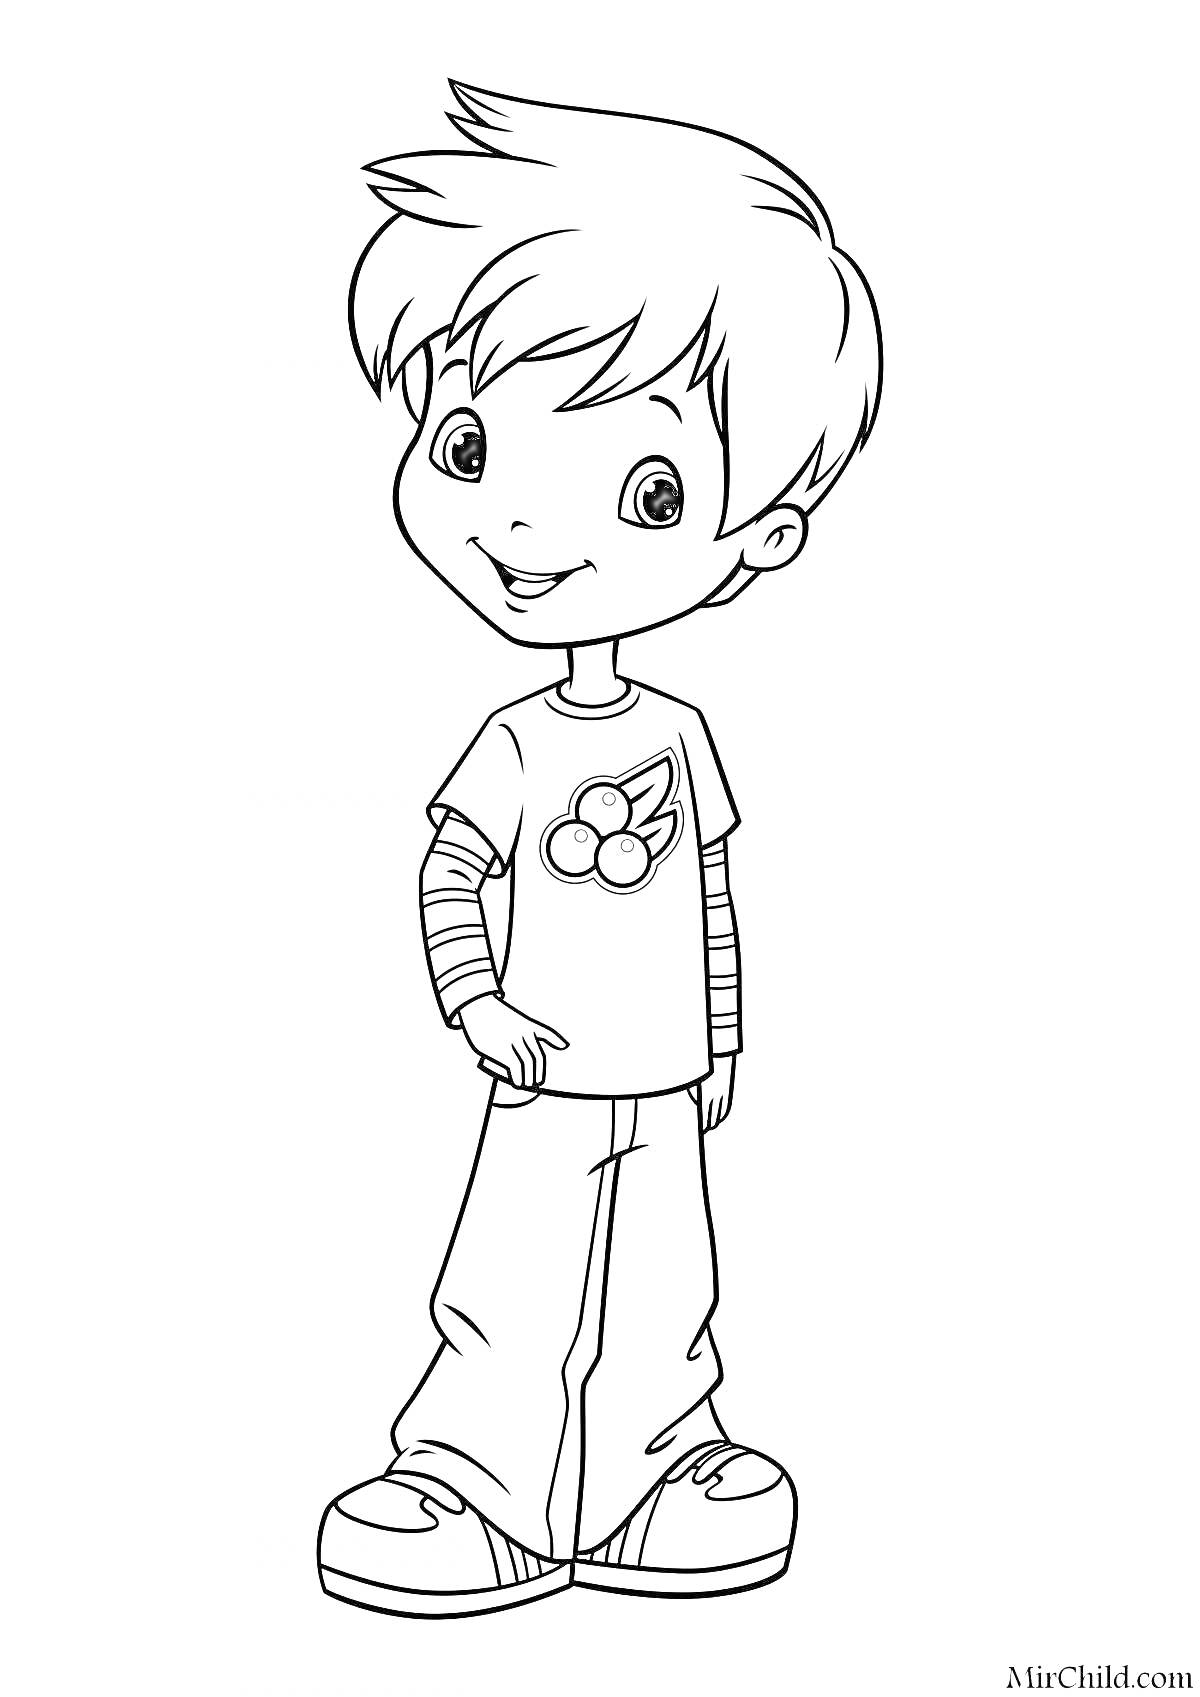 Раскраска Мальчик в футболке с вишнями, полосатых рукавах и кроссовках